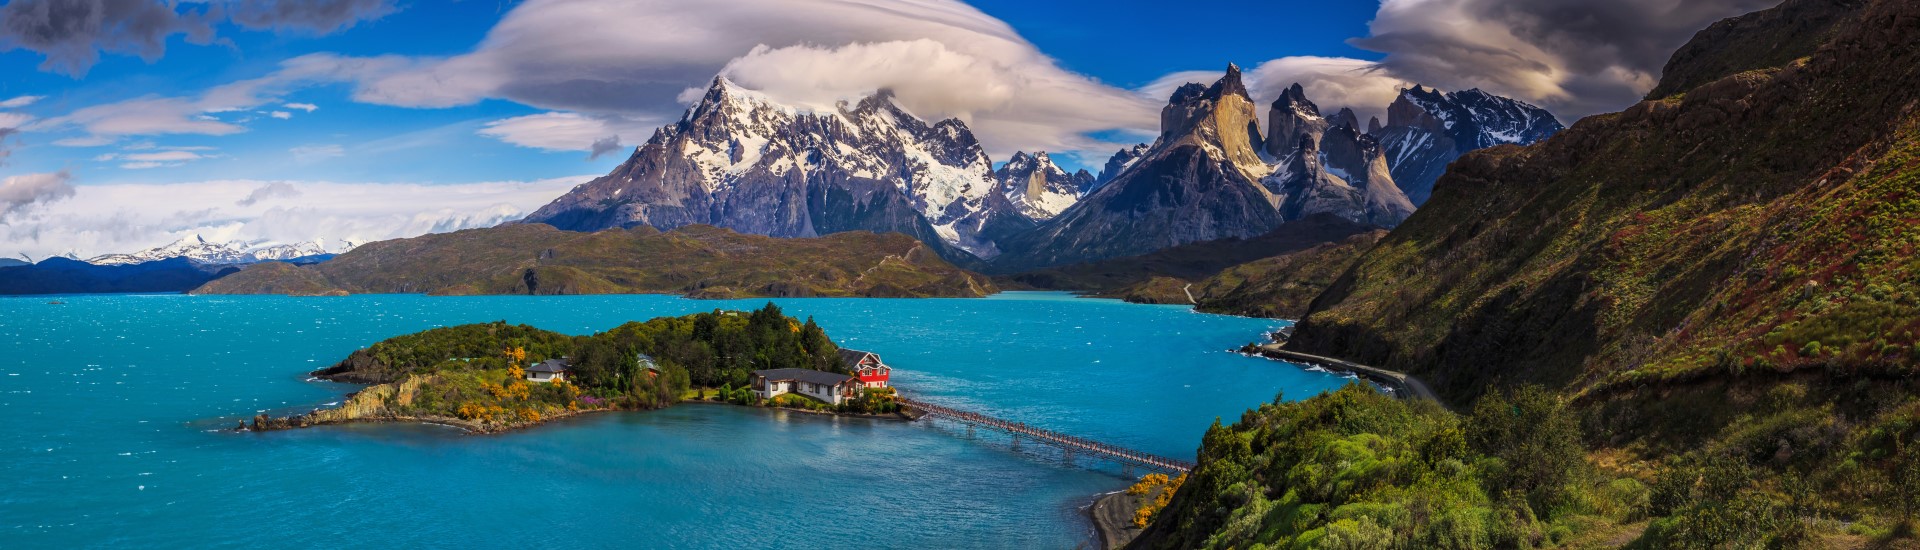 Chilean Patagonia - Torres del Paine National Park landscape